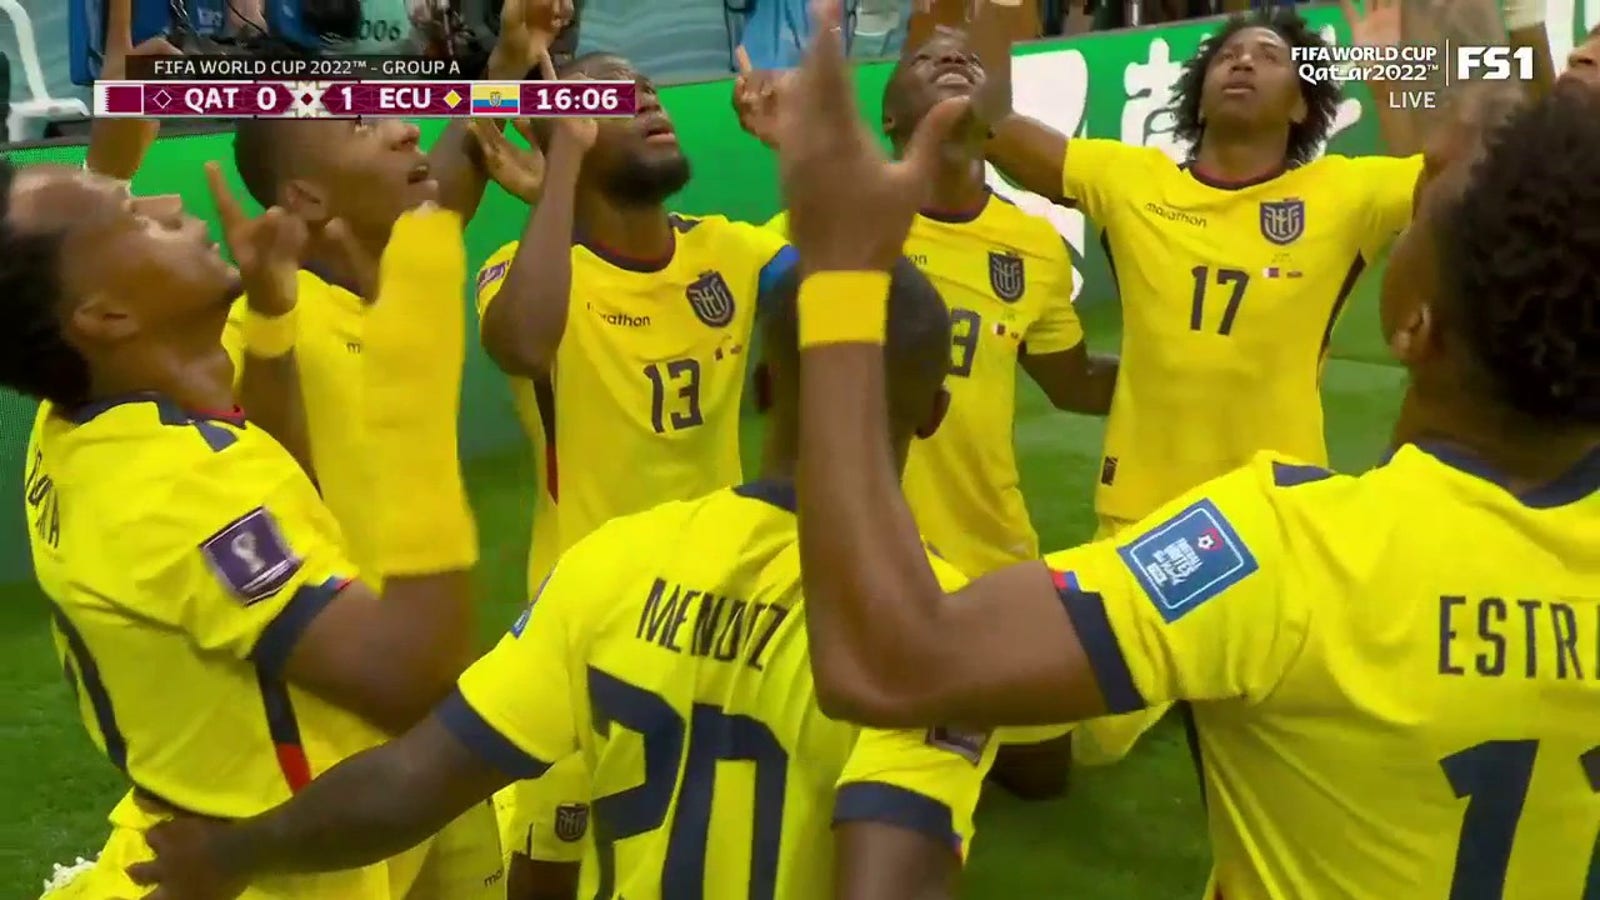 Ecuador's Enner Valencia scores goal vs. Qatar in 15' | 2022 FIFA World Cup